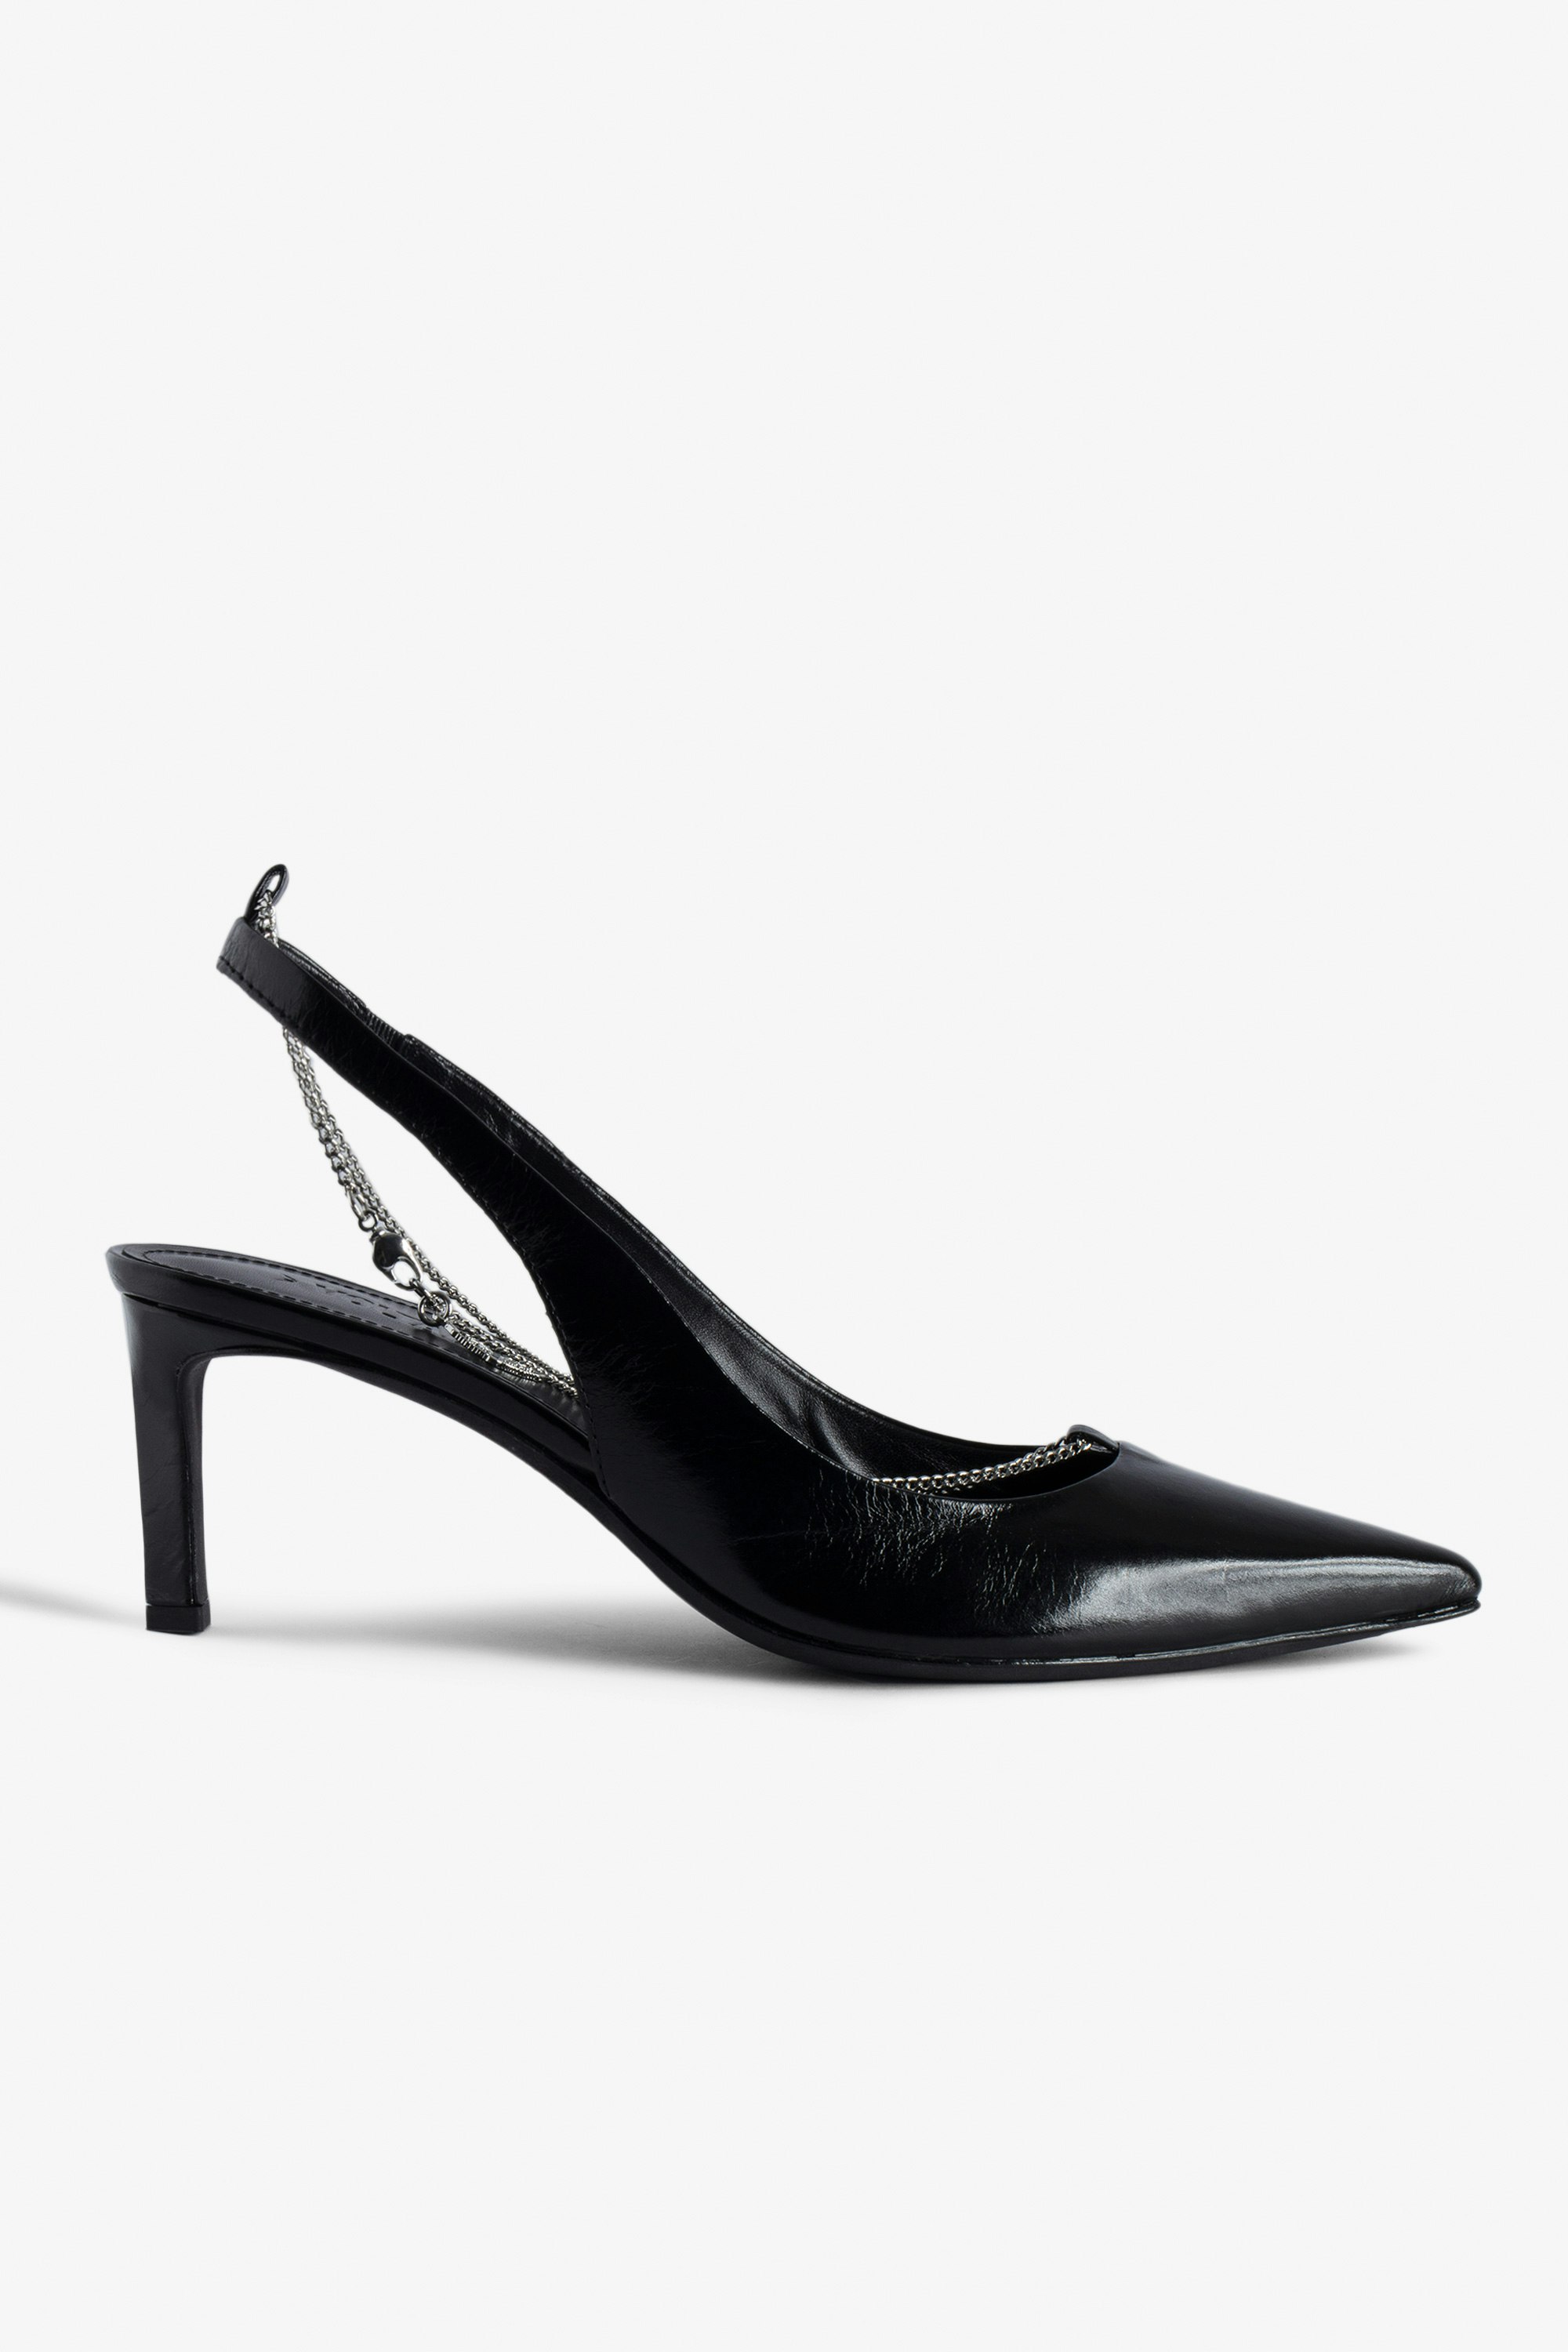 Zapatos de Salón First Night - Zapatos de salón negros de piel con efecto vintage, cordones de piel y cadena de metal.